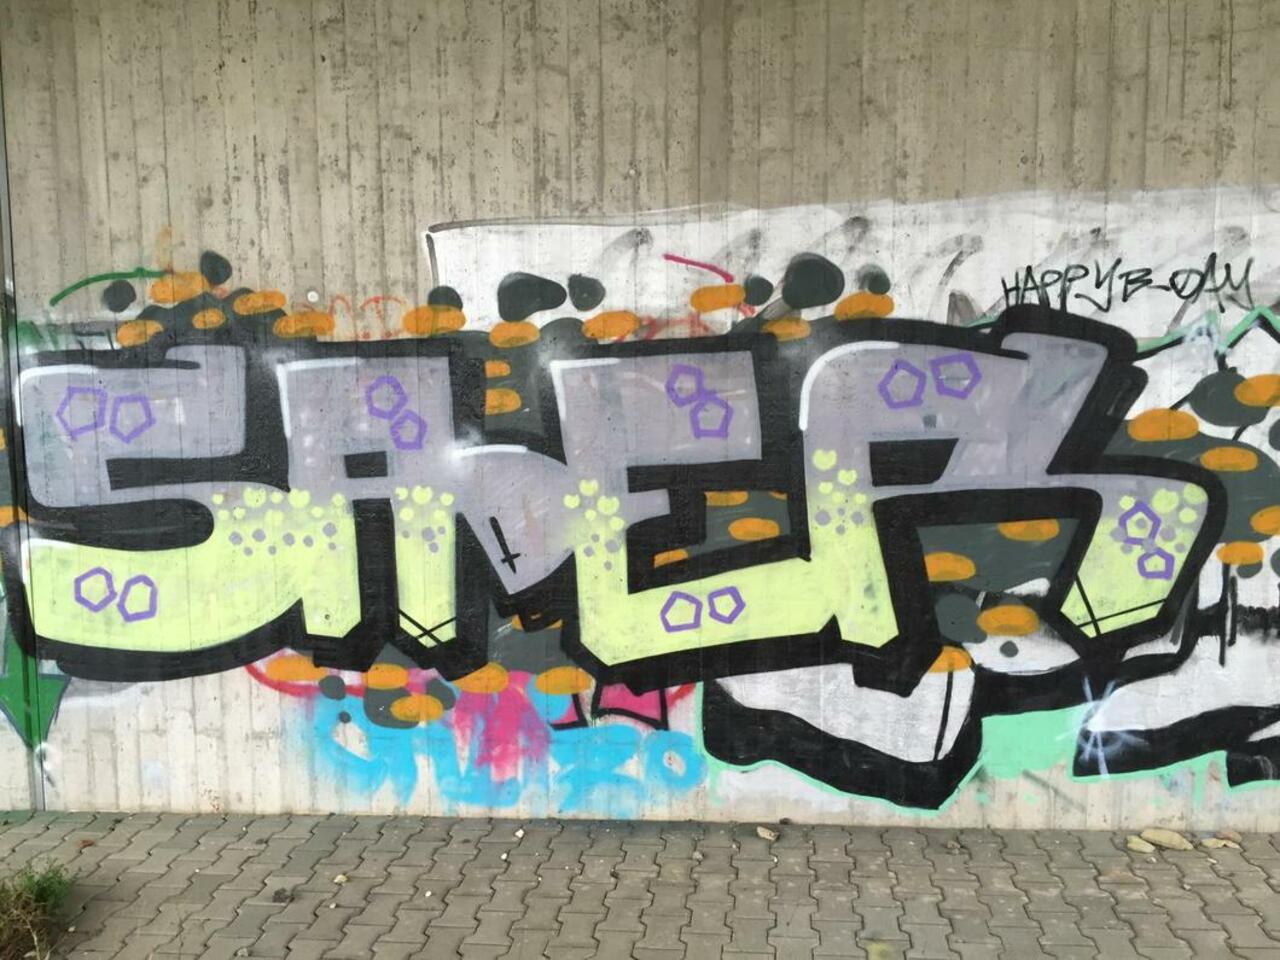 RT @Str33tArt: ...in Taunusstein // Sader //#streetart #graffiti http://t.co/4cSi0wpUet